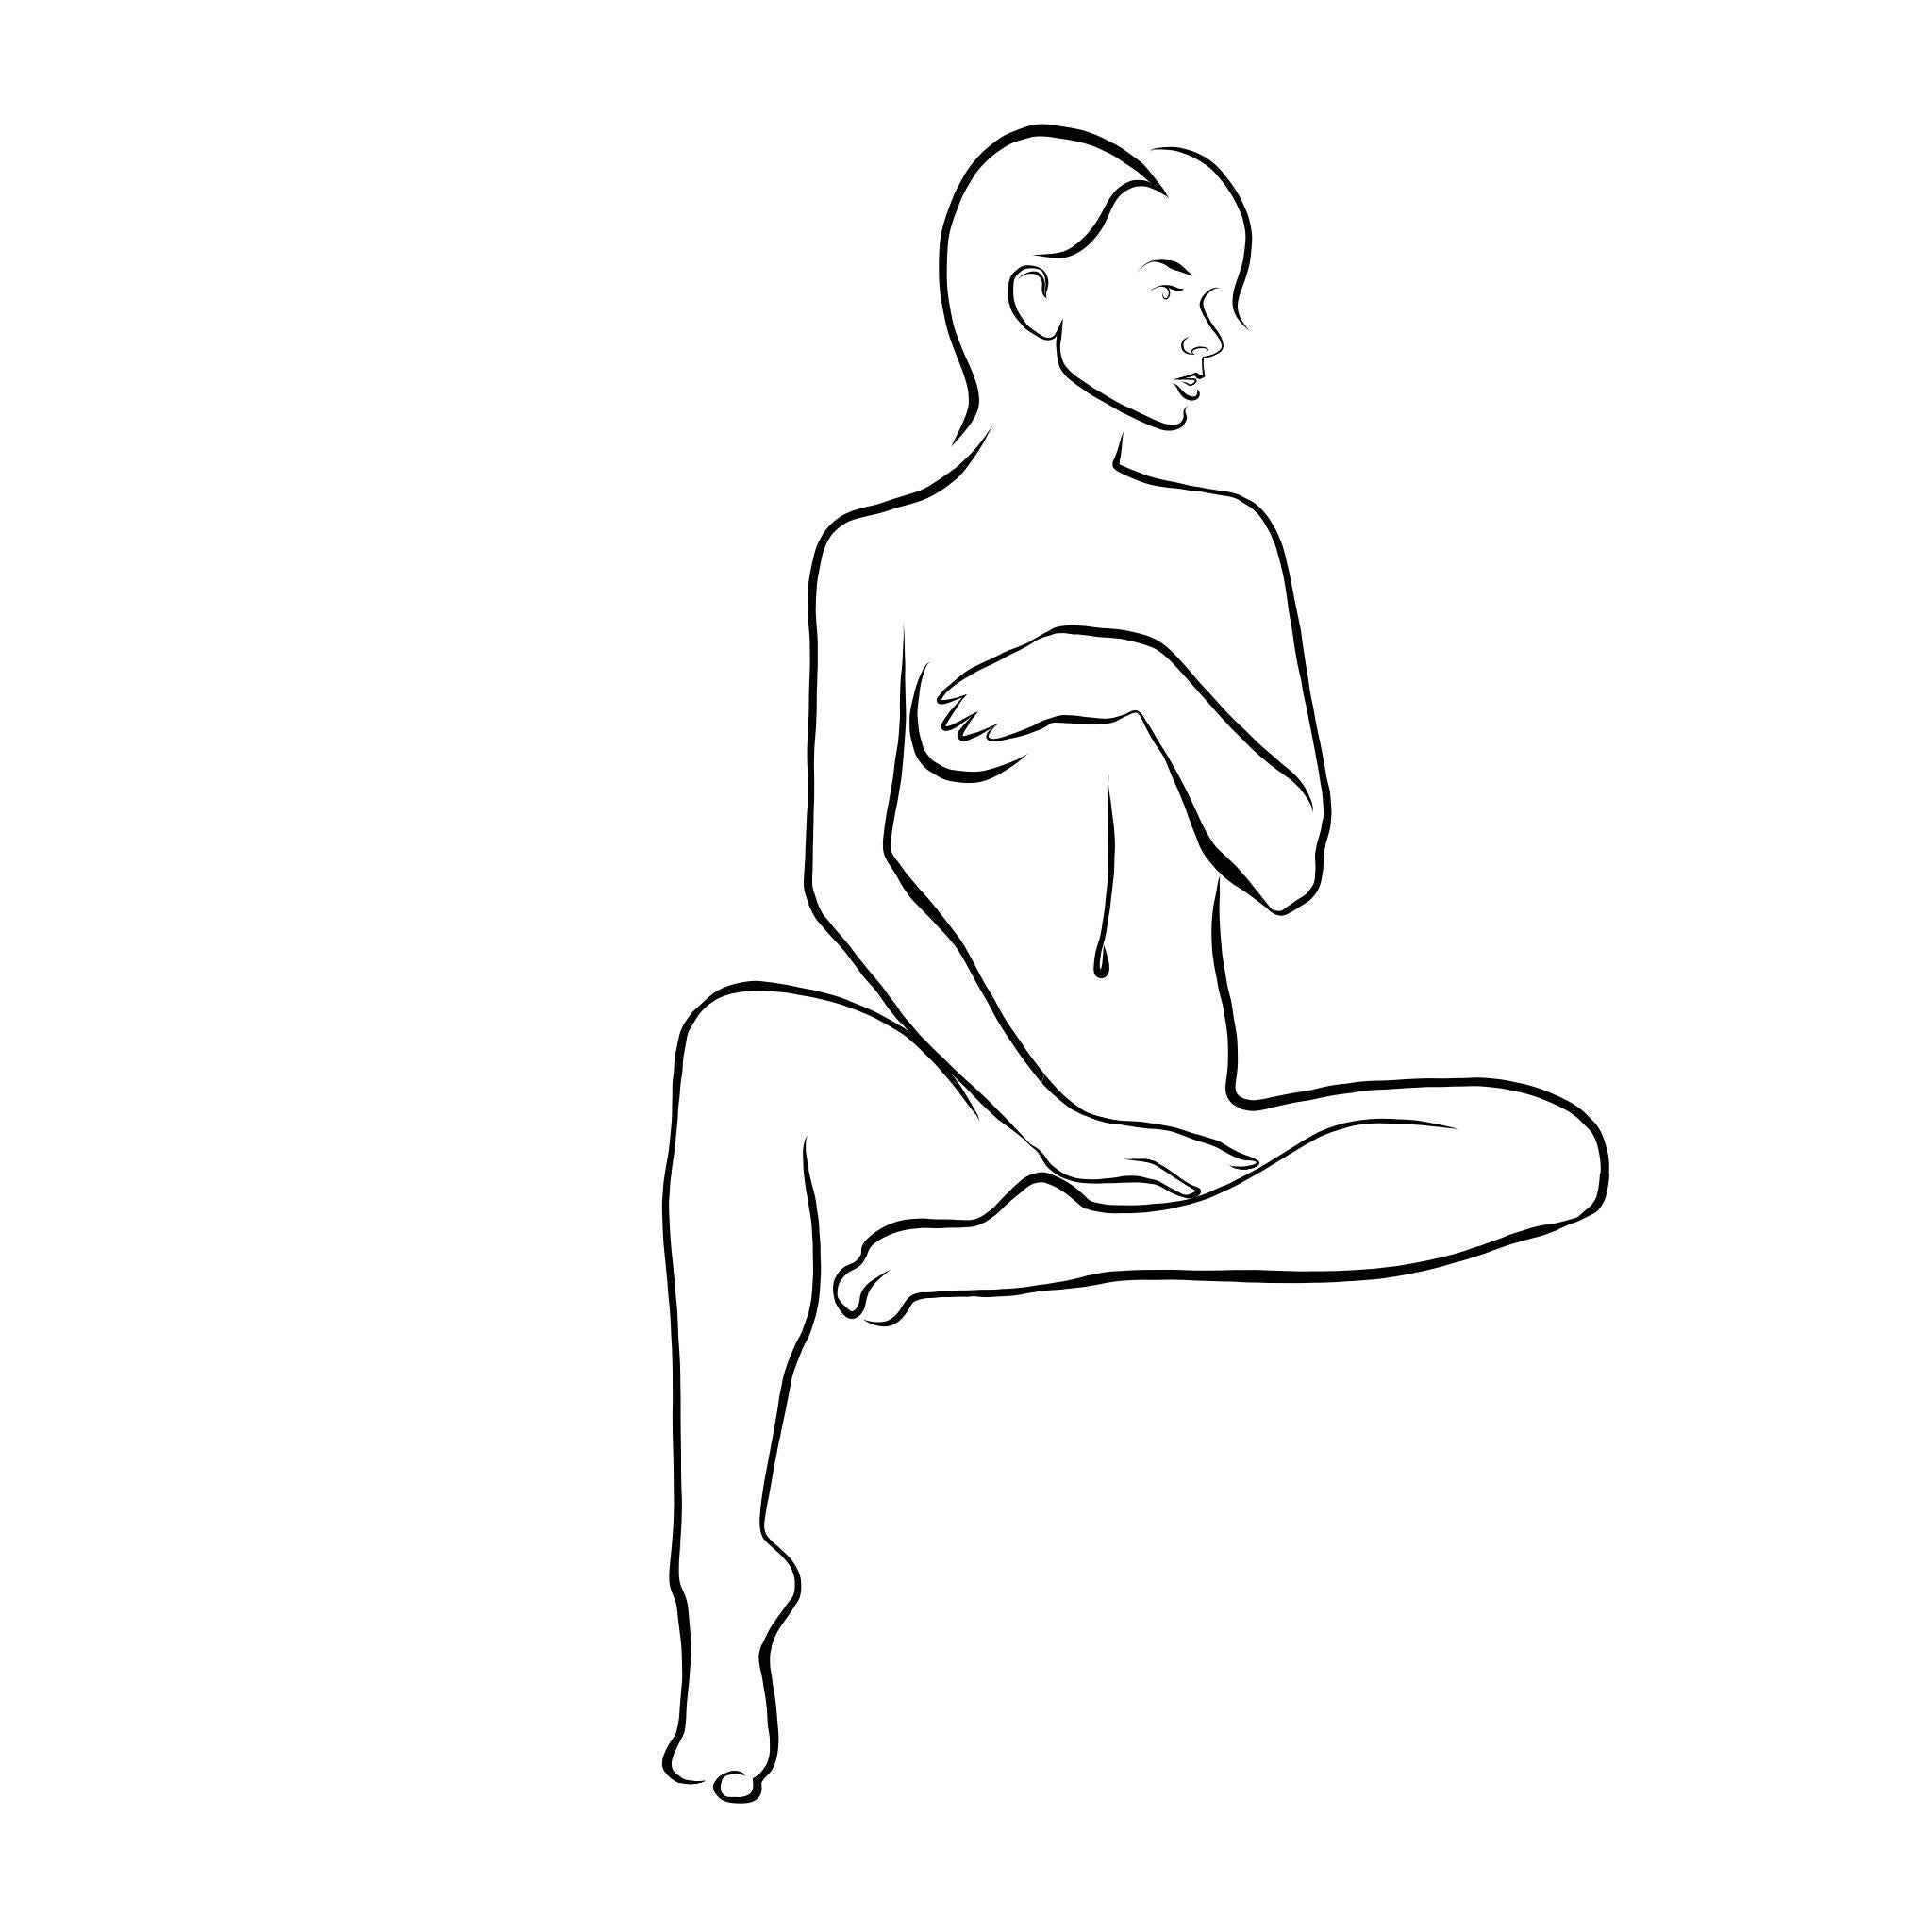 Michael Binkley Nude Print - Haiku #54, 1/50 - Digital Vector Drawing Female Nude Woman Figure Short Hair